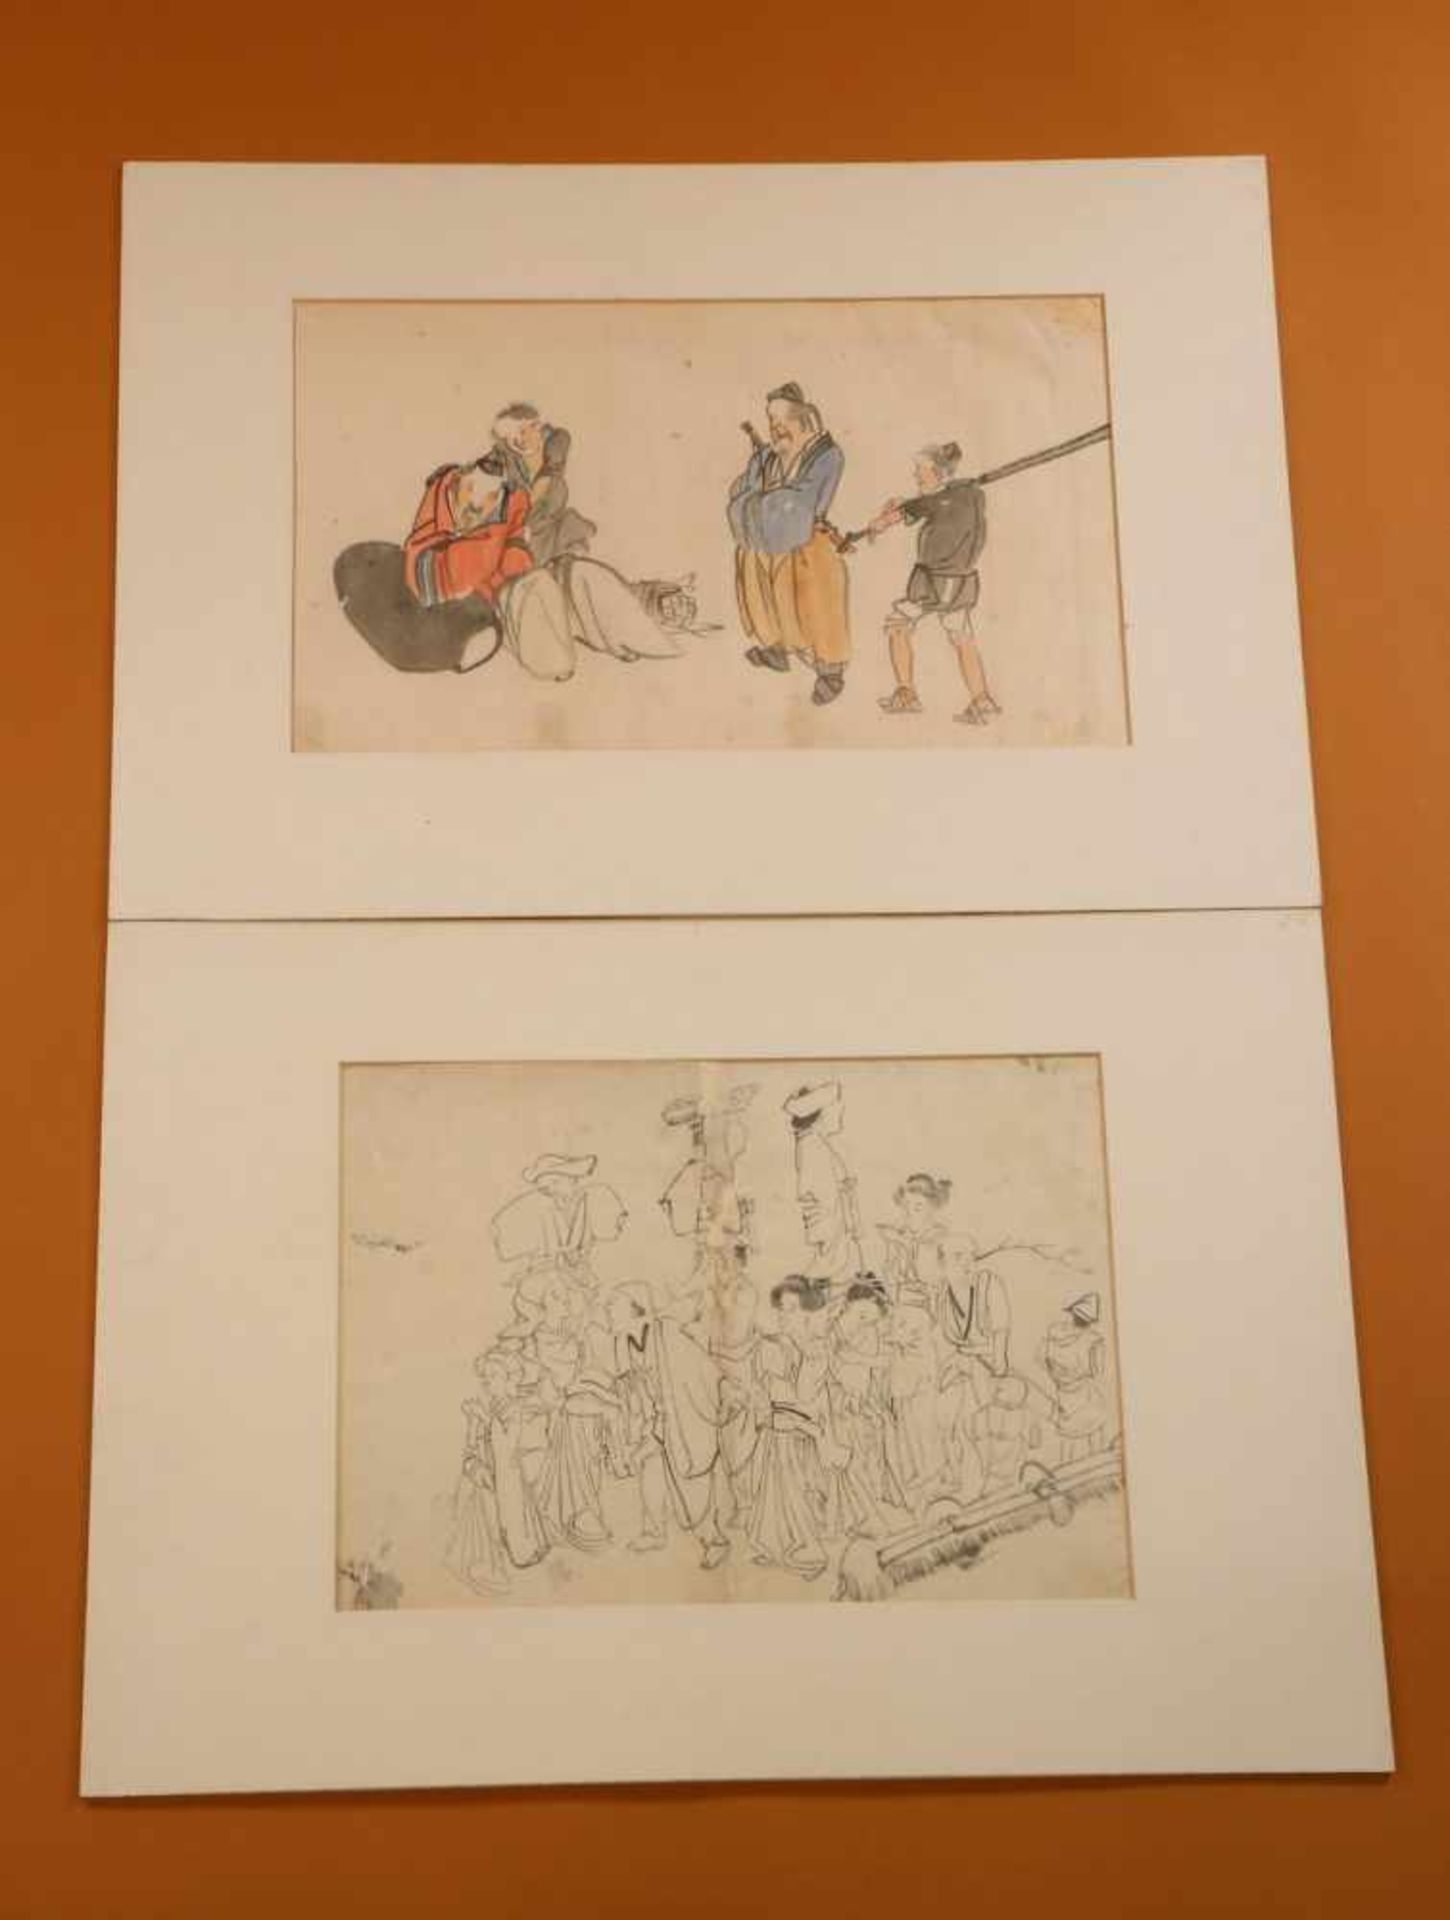 Japan, getekende boekillustraties, hoogwaardigheidsbekleders,landschappen, 19e eeuw, in passe- - Bild 2 aus 4